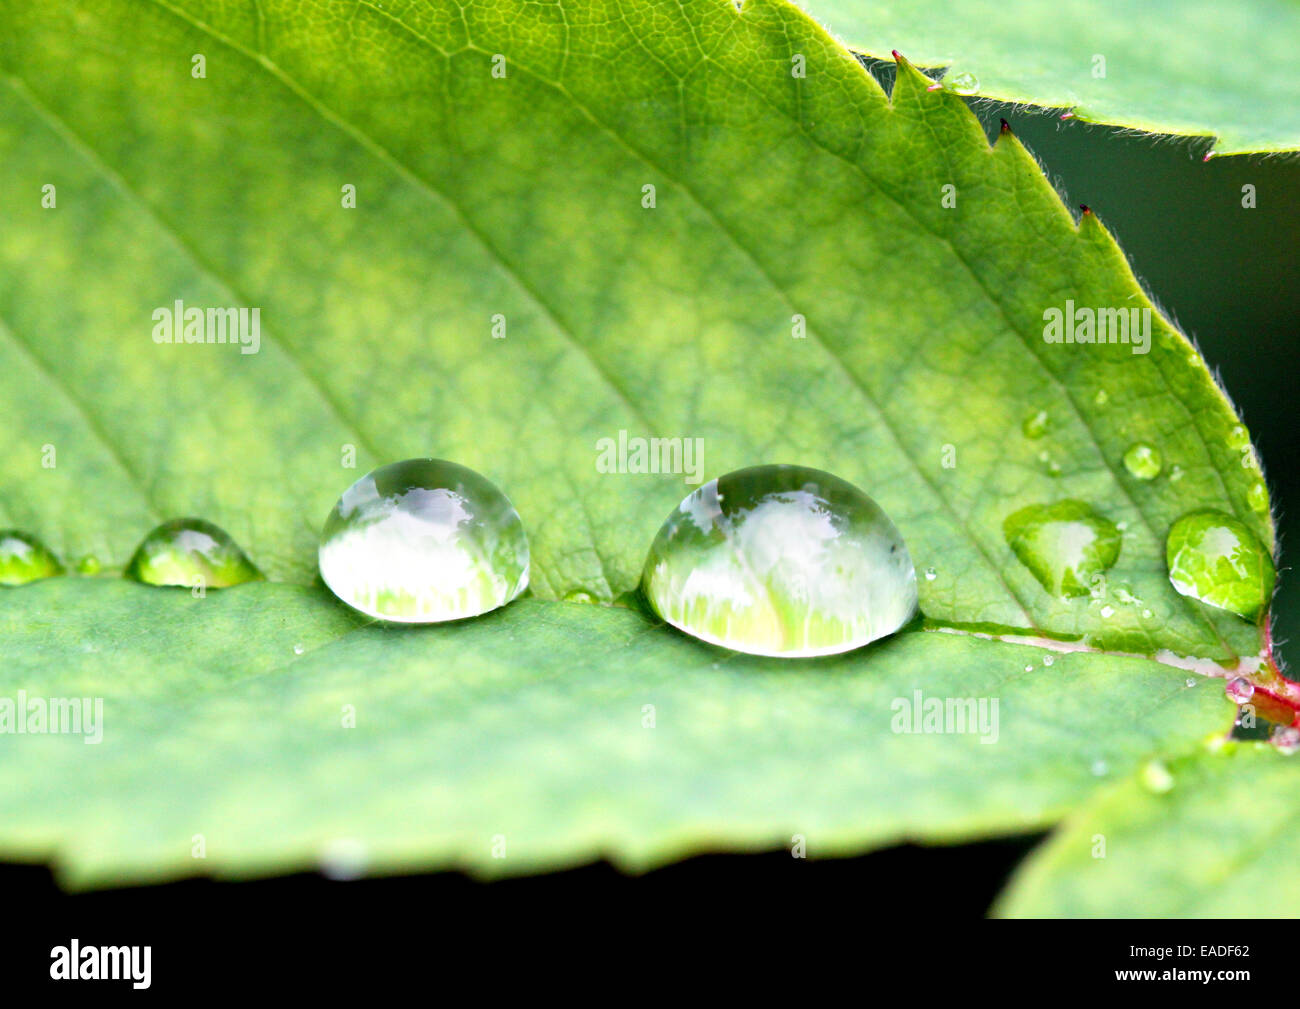 Goccia di acqua fotografato close-up su una foglia verde Foto Stock